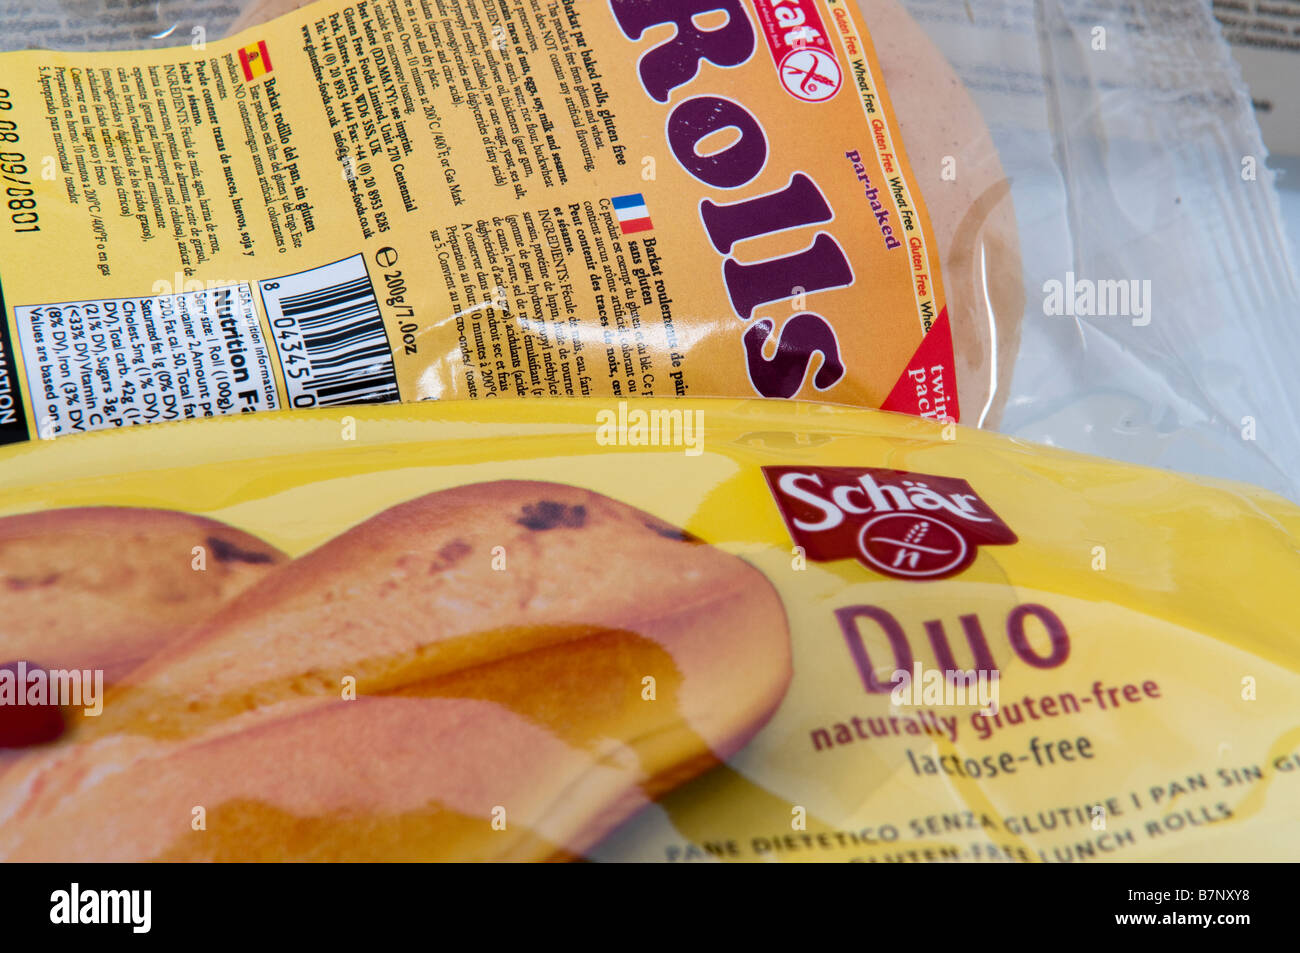 Glutenfreies Brötchen/Brot in der Verpackung von Schär (Schär) und Barkat, aus dem Vereinigten Königreich auf Rezept erhältlich Stockfoto